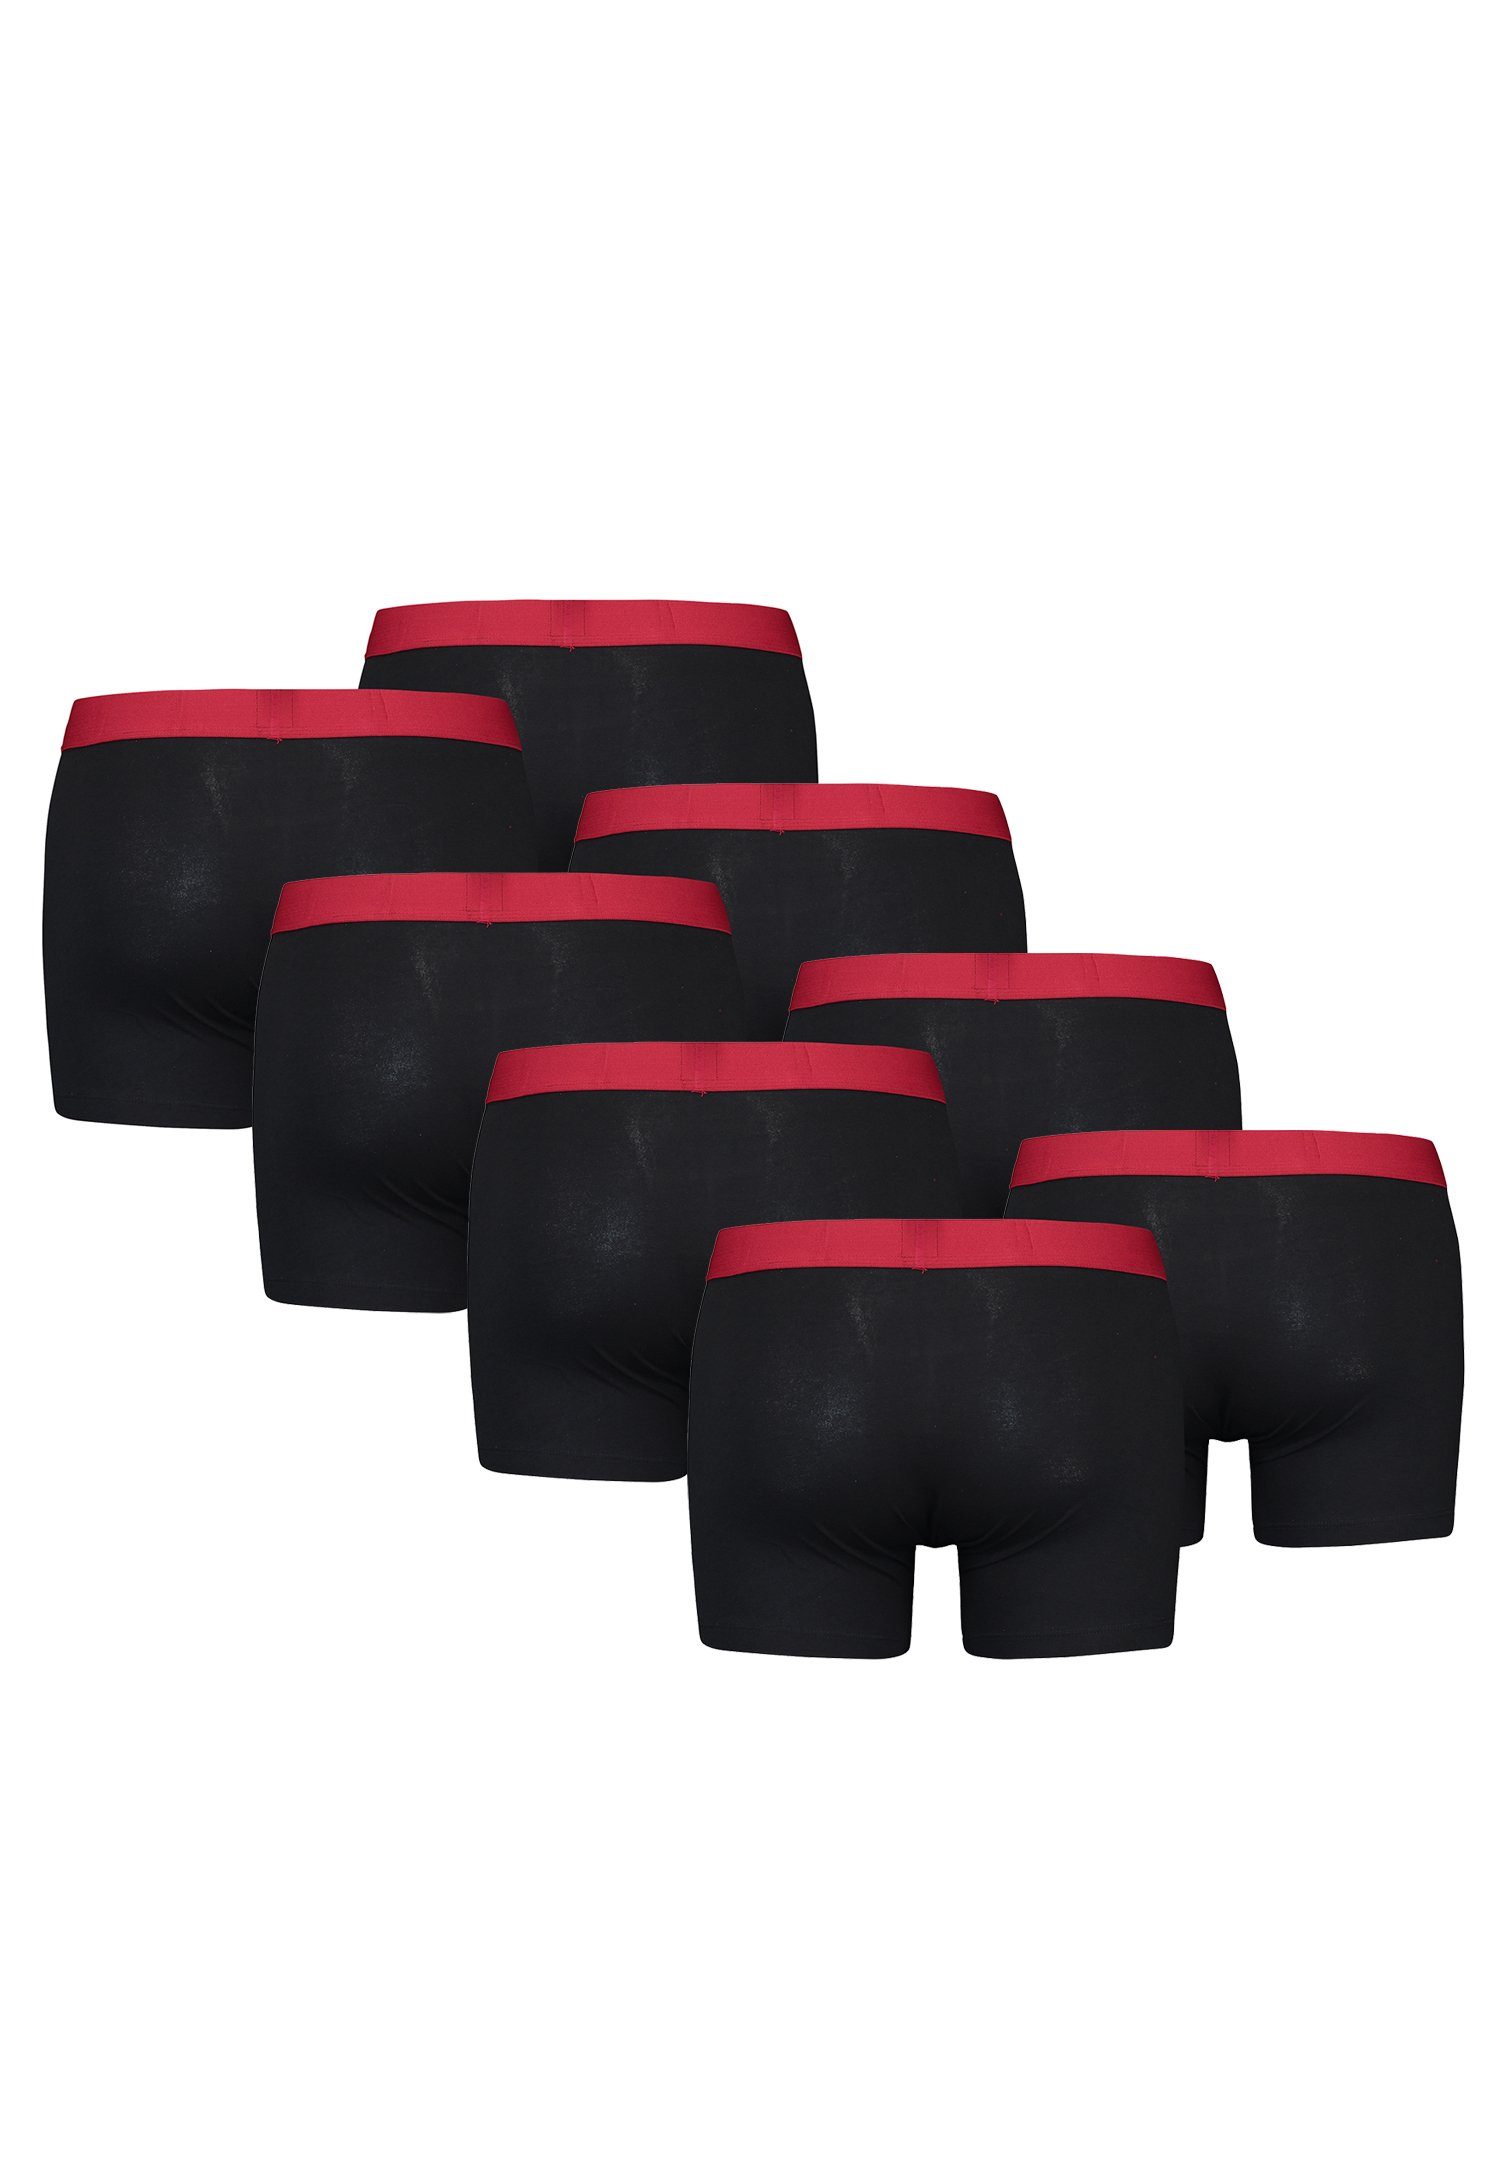 Levi's® Boxershorts MEN SOLID BASIC ORGANIC Black/Red CO BOXER BRIEF 8er-Pack) Pack 8-St., (Set, 8er